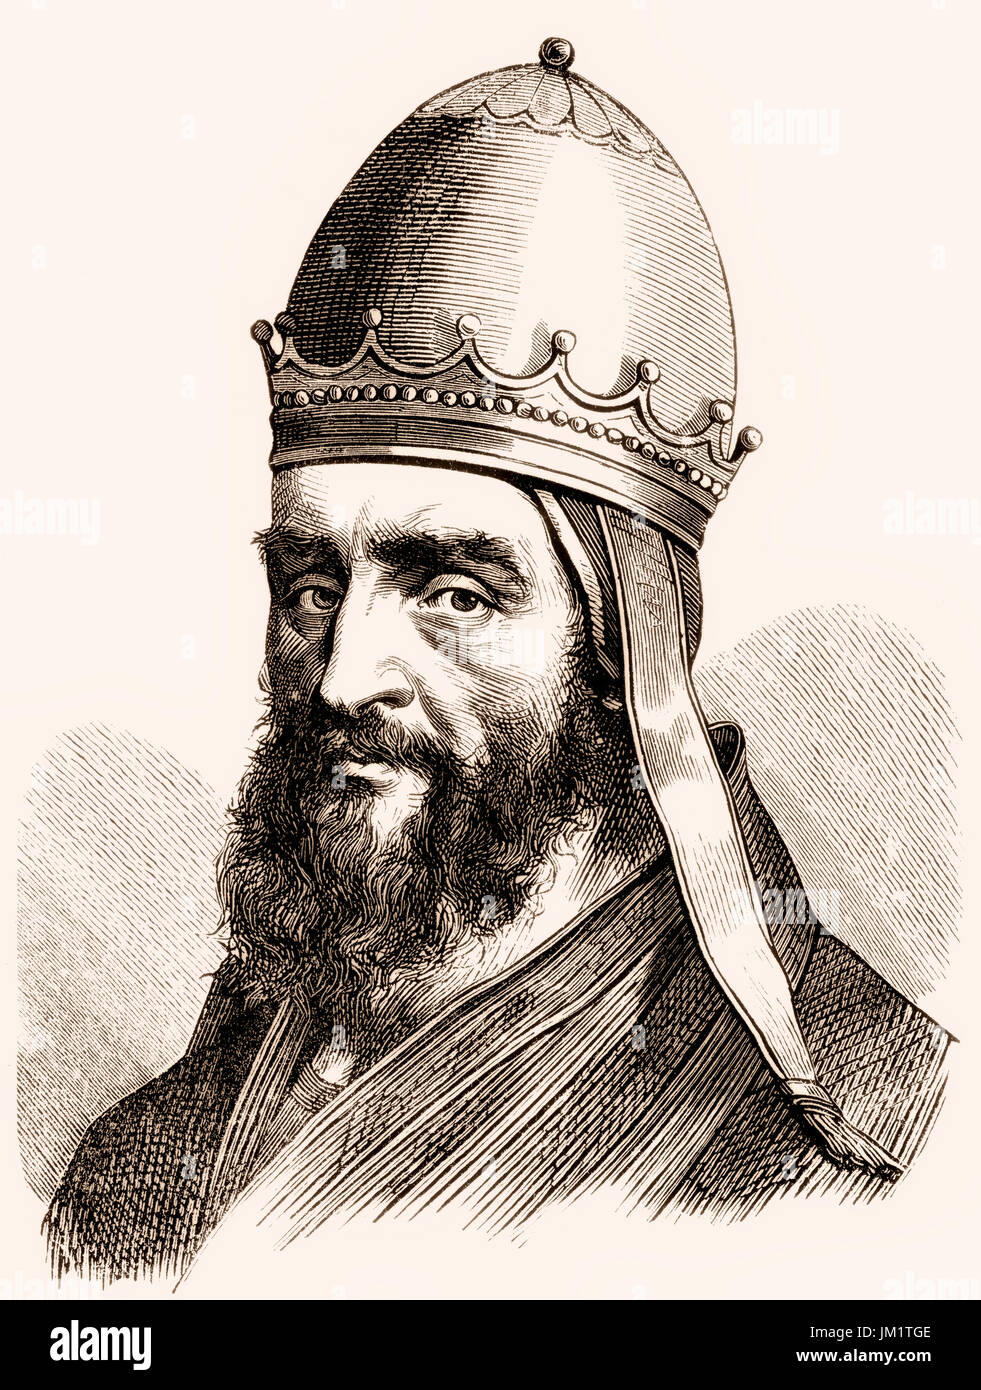 El Papa Urbano III, nacido Uberto Crivelli, reinó desde el 25 de noviembre de 1185 hasta su muerte en 1187 Foto de stock